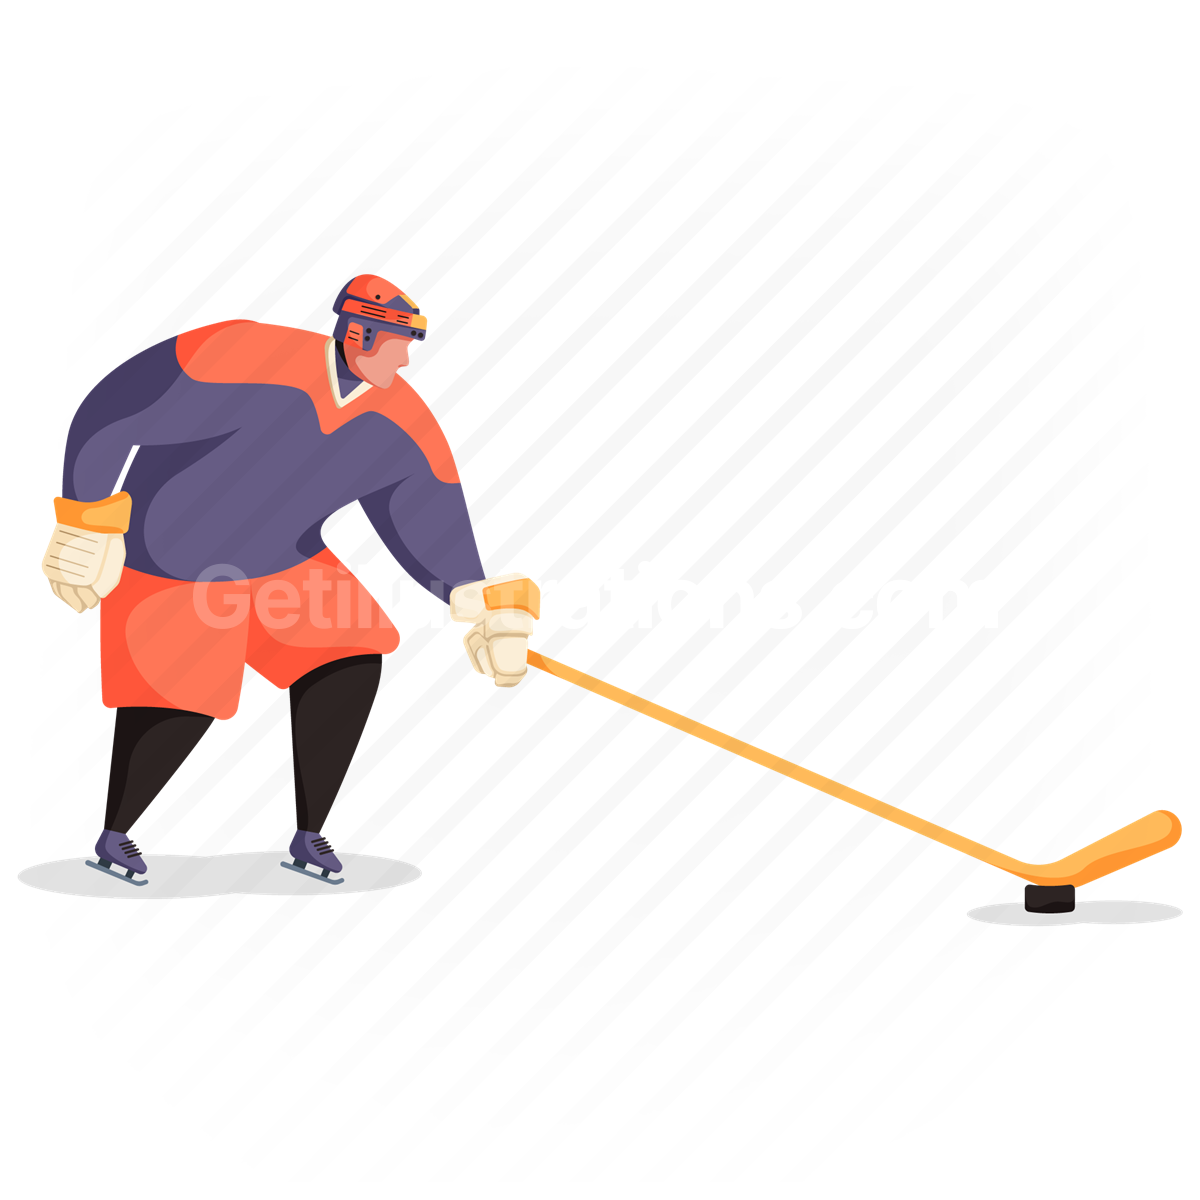 man, sport, fitness, ice hockey, hockey